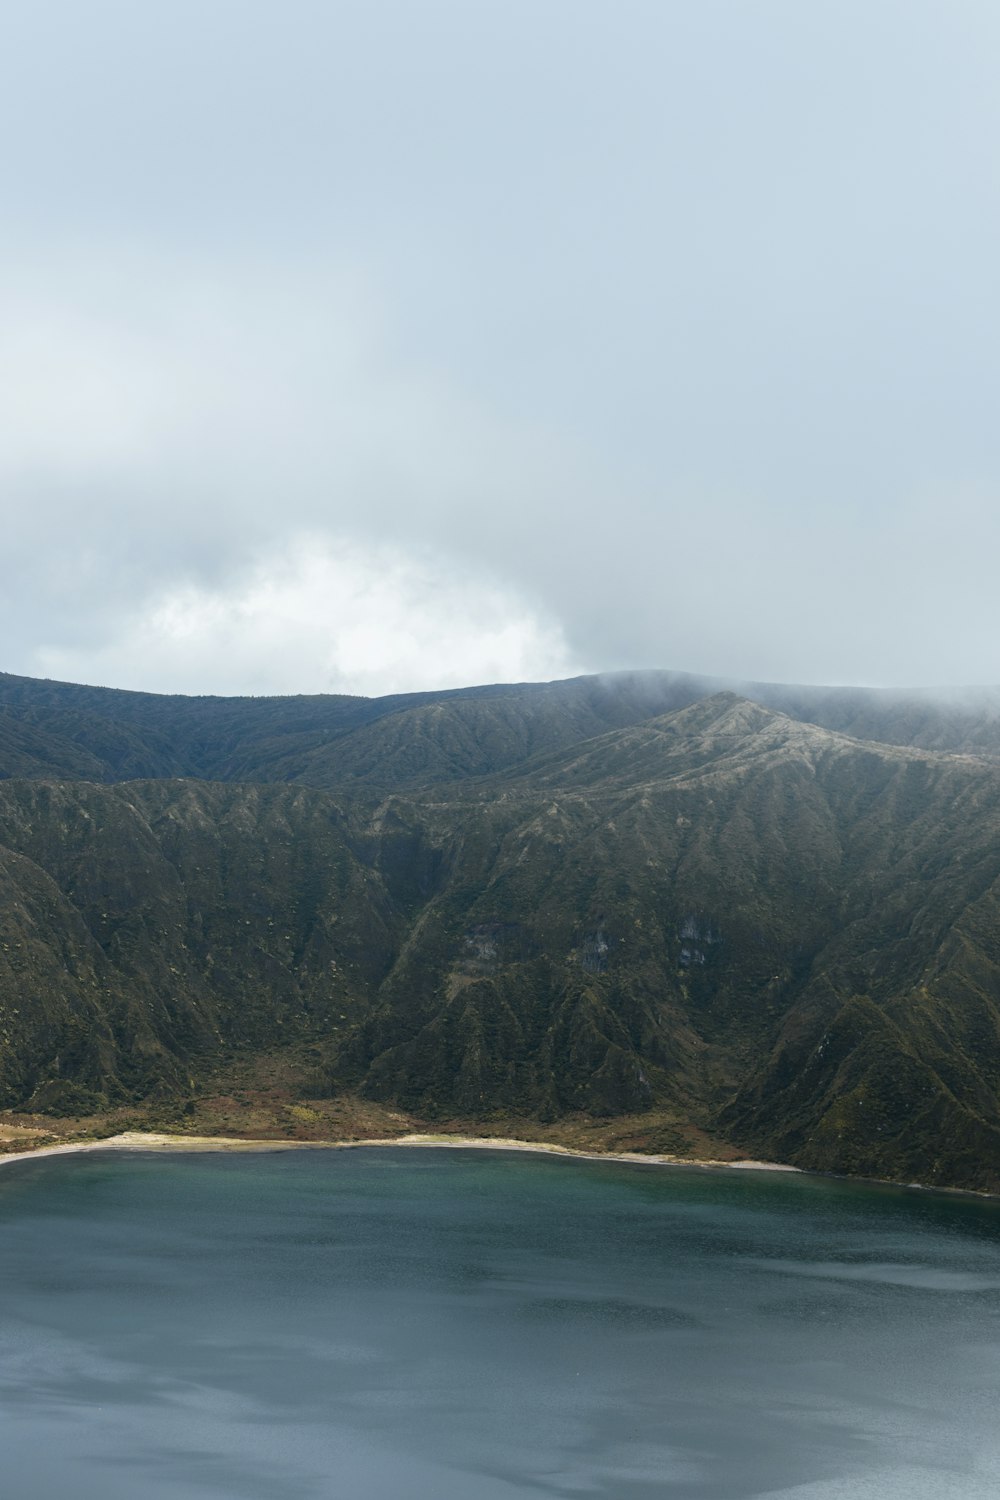 Landschaftsfotografie von Bergen in der Nähe eines Gewässers